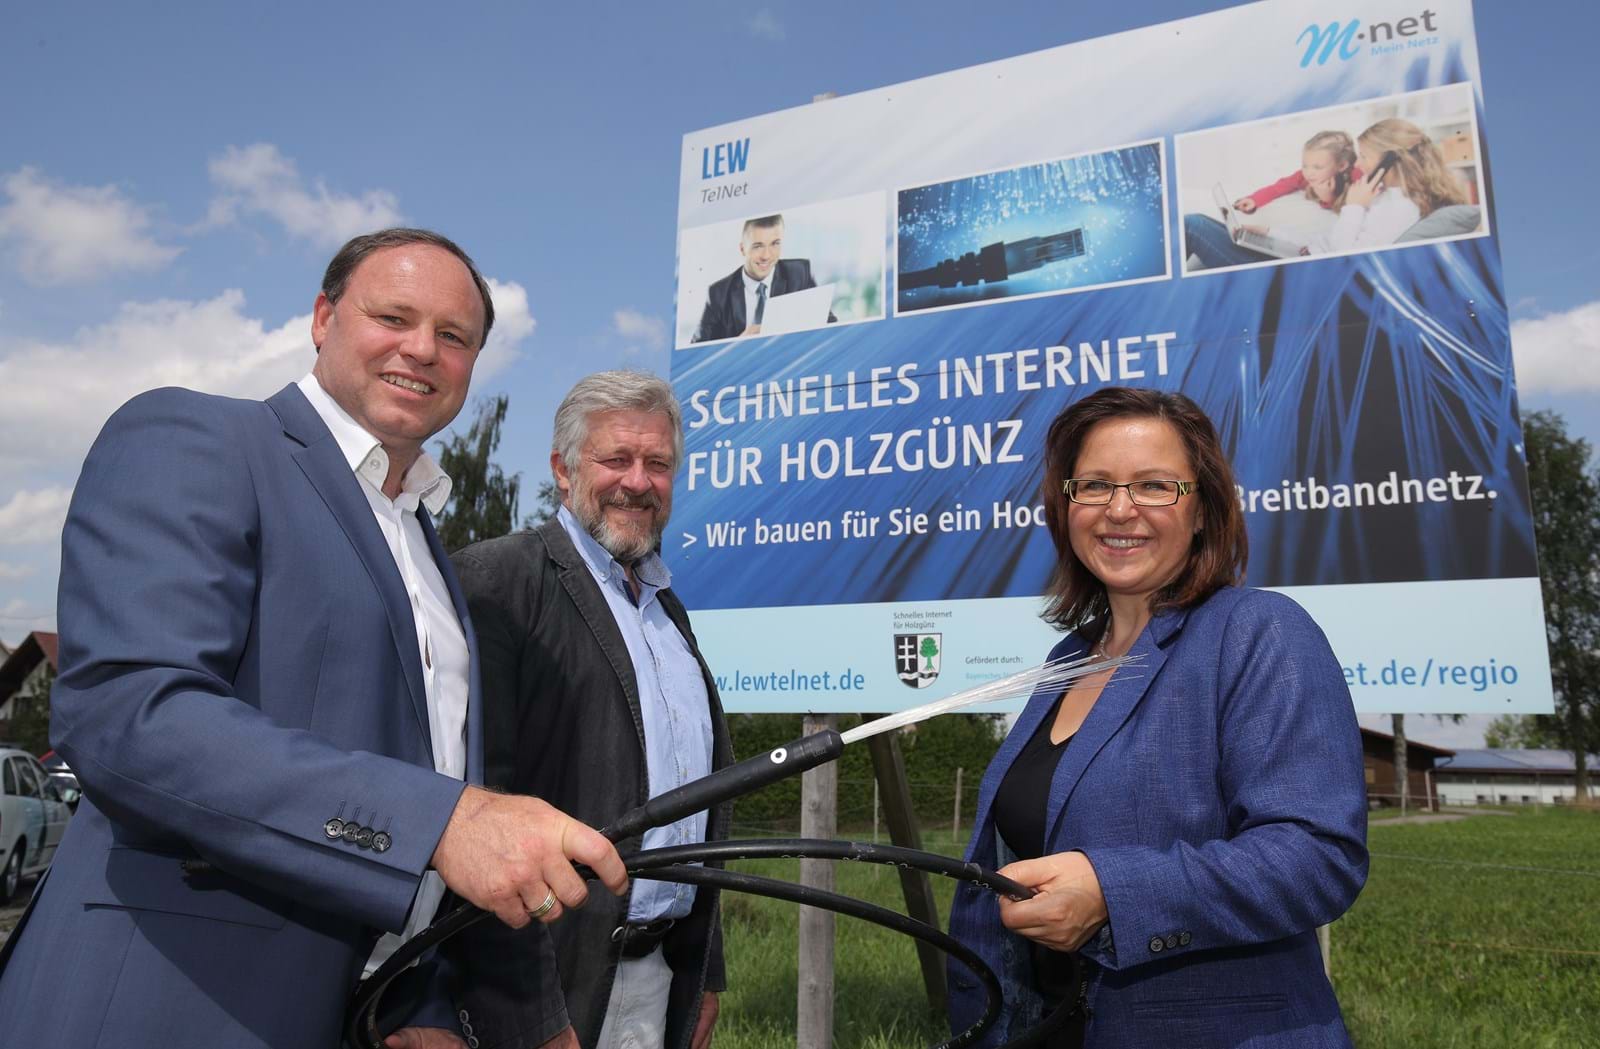 LEW TelNet-Geschäftsführer Johannes Stepperger, Bürgermeister Paul Nagler und Gabi Emmerling, Regionalbeauftragte Breitbandausbau Schwaben bei M-net, stellen das neue Breitbandnetz vor.